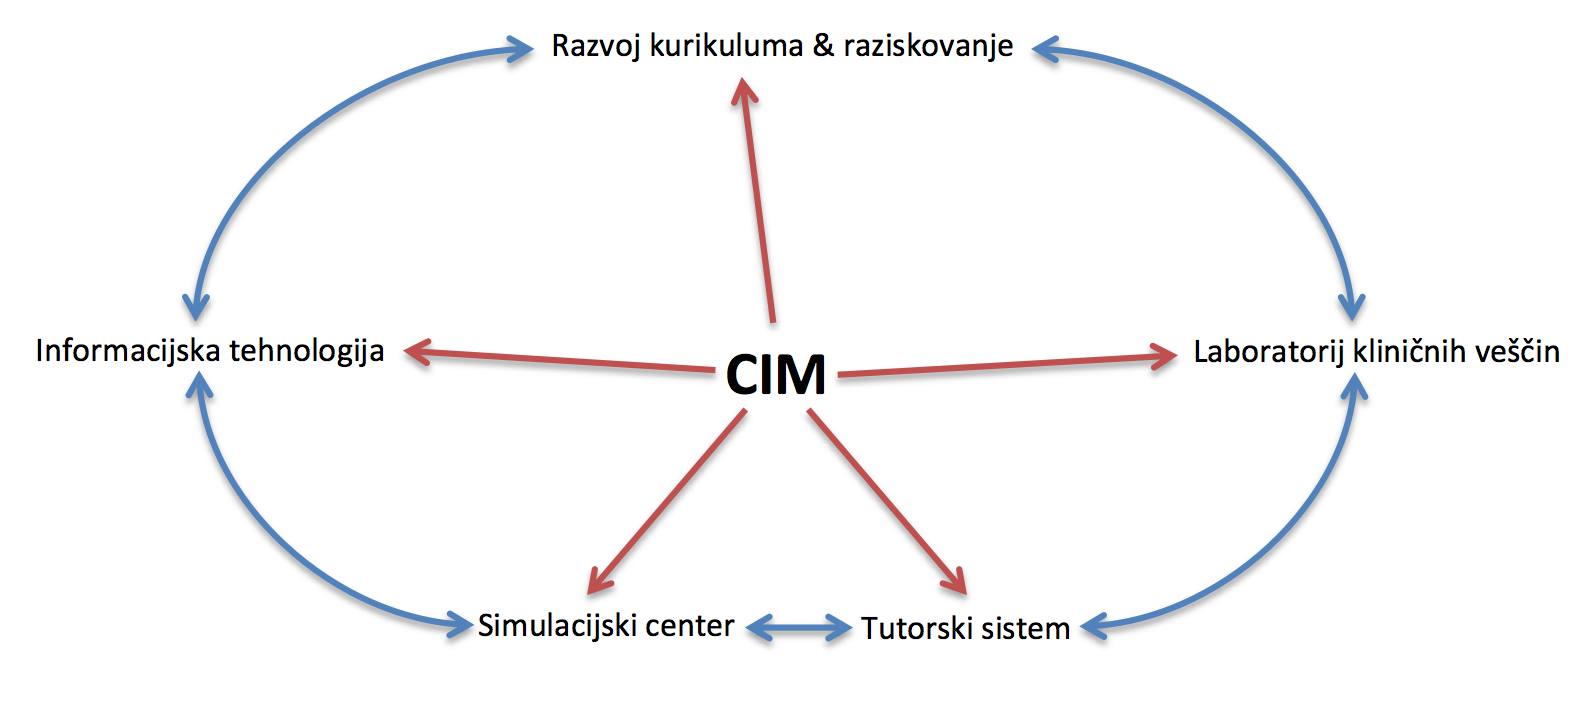 Na sliki so prikazana področja delovanja CIM in interakcije med temi področji